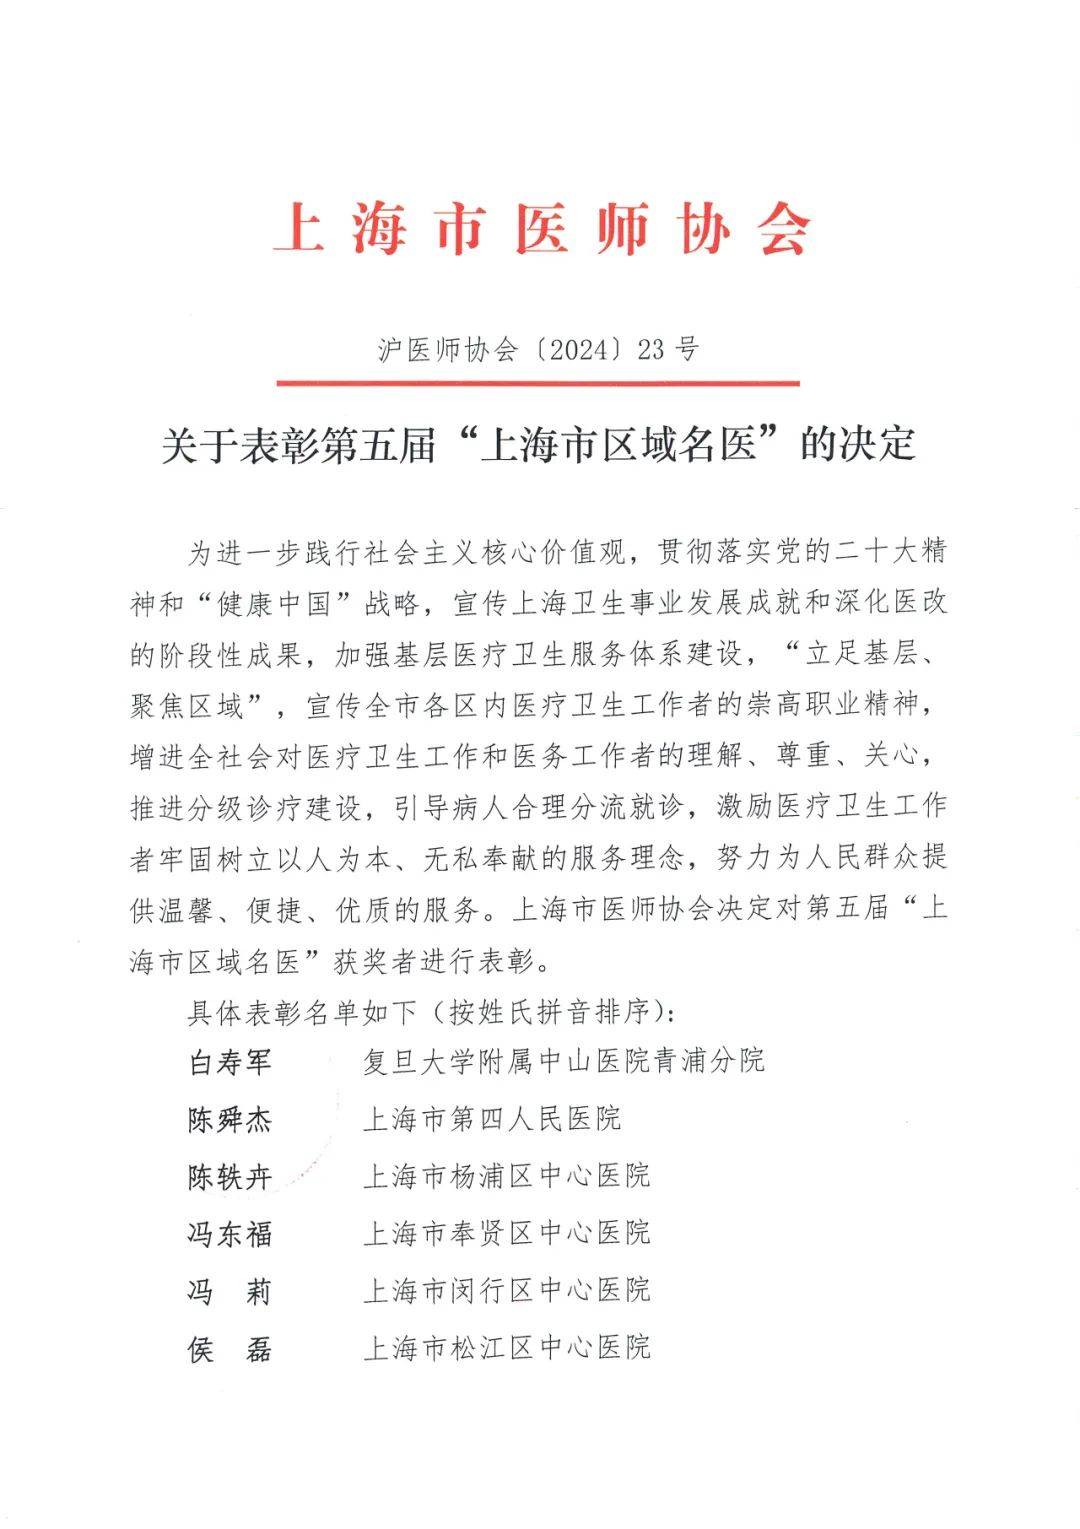 祝贺！应光耀荣获第五届“上海市区域名医”称号！